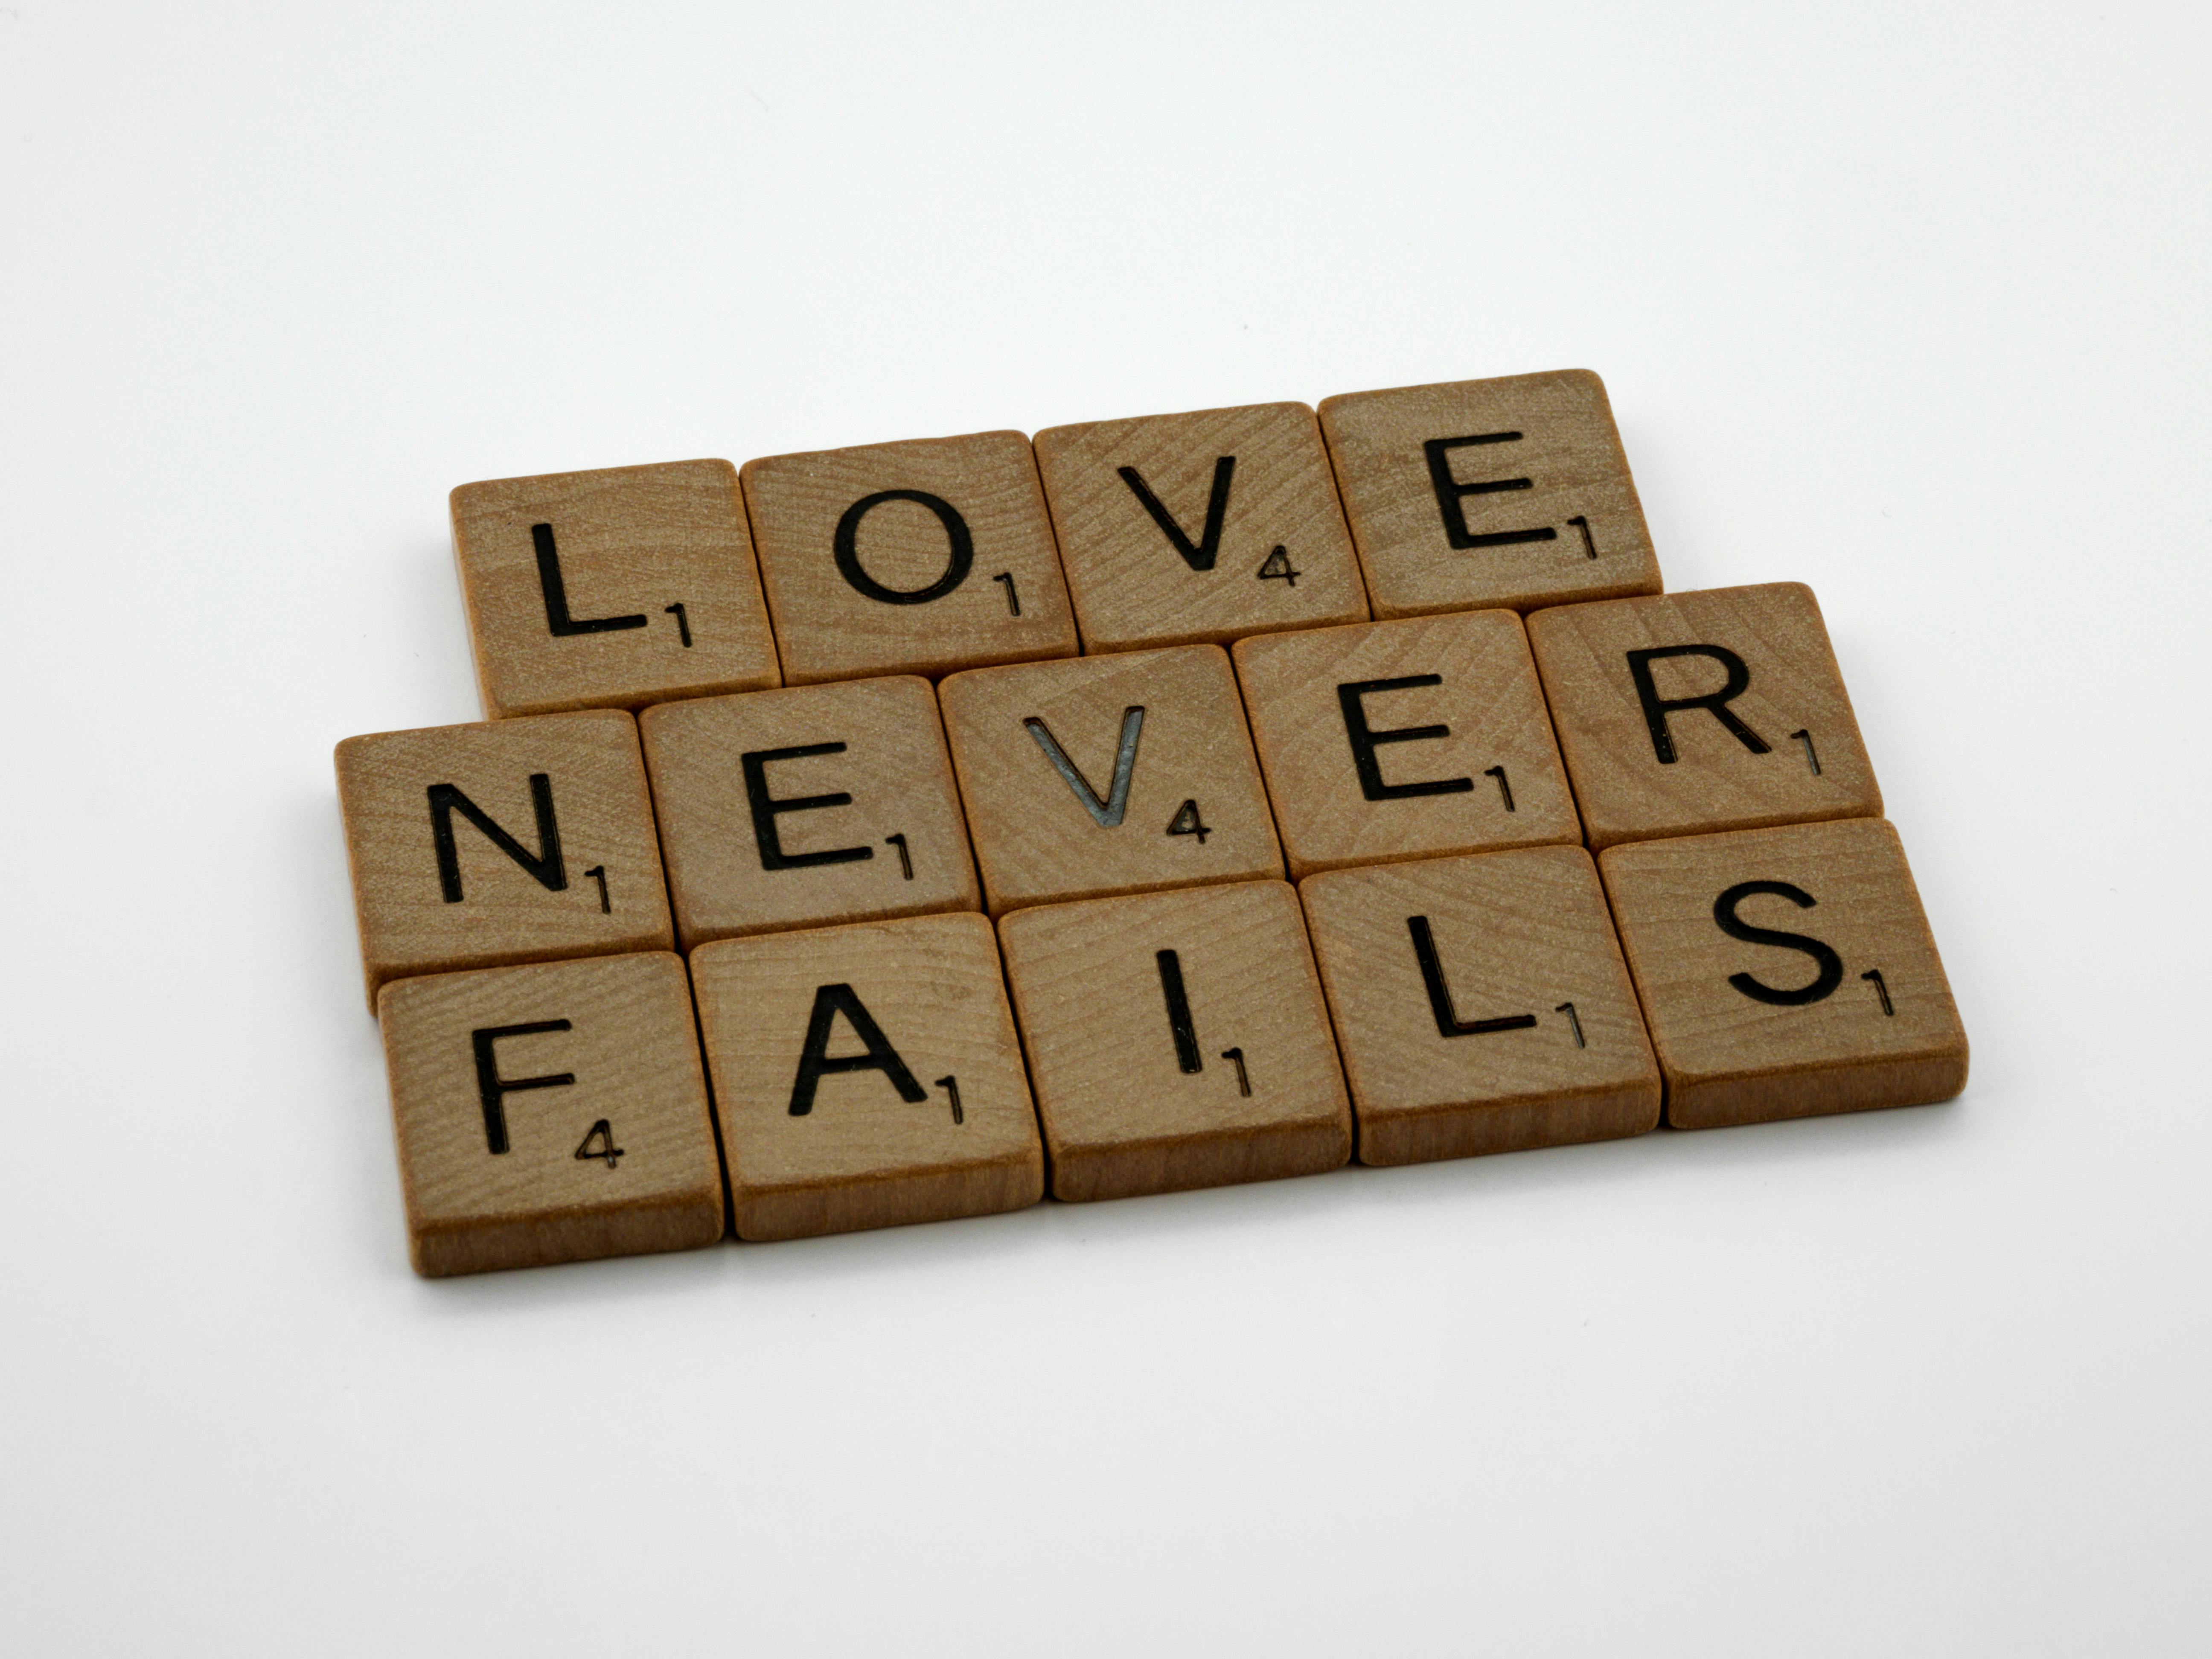 Scrabble tiles spelling out "Love Never Fails" | Source: Pexels